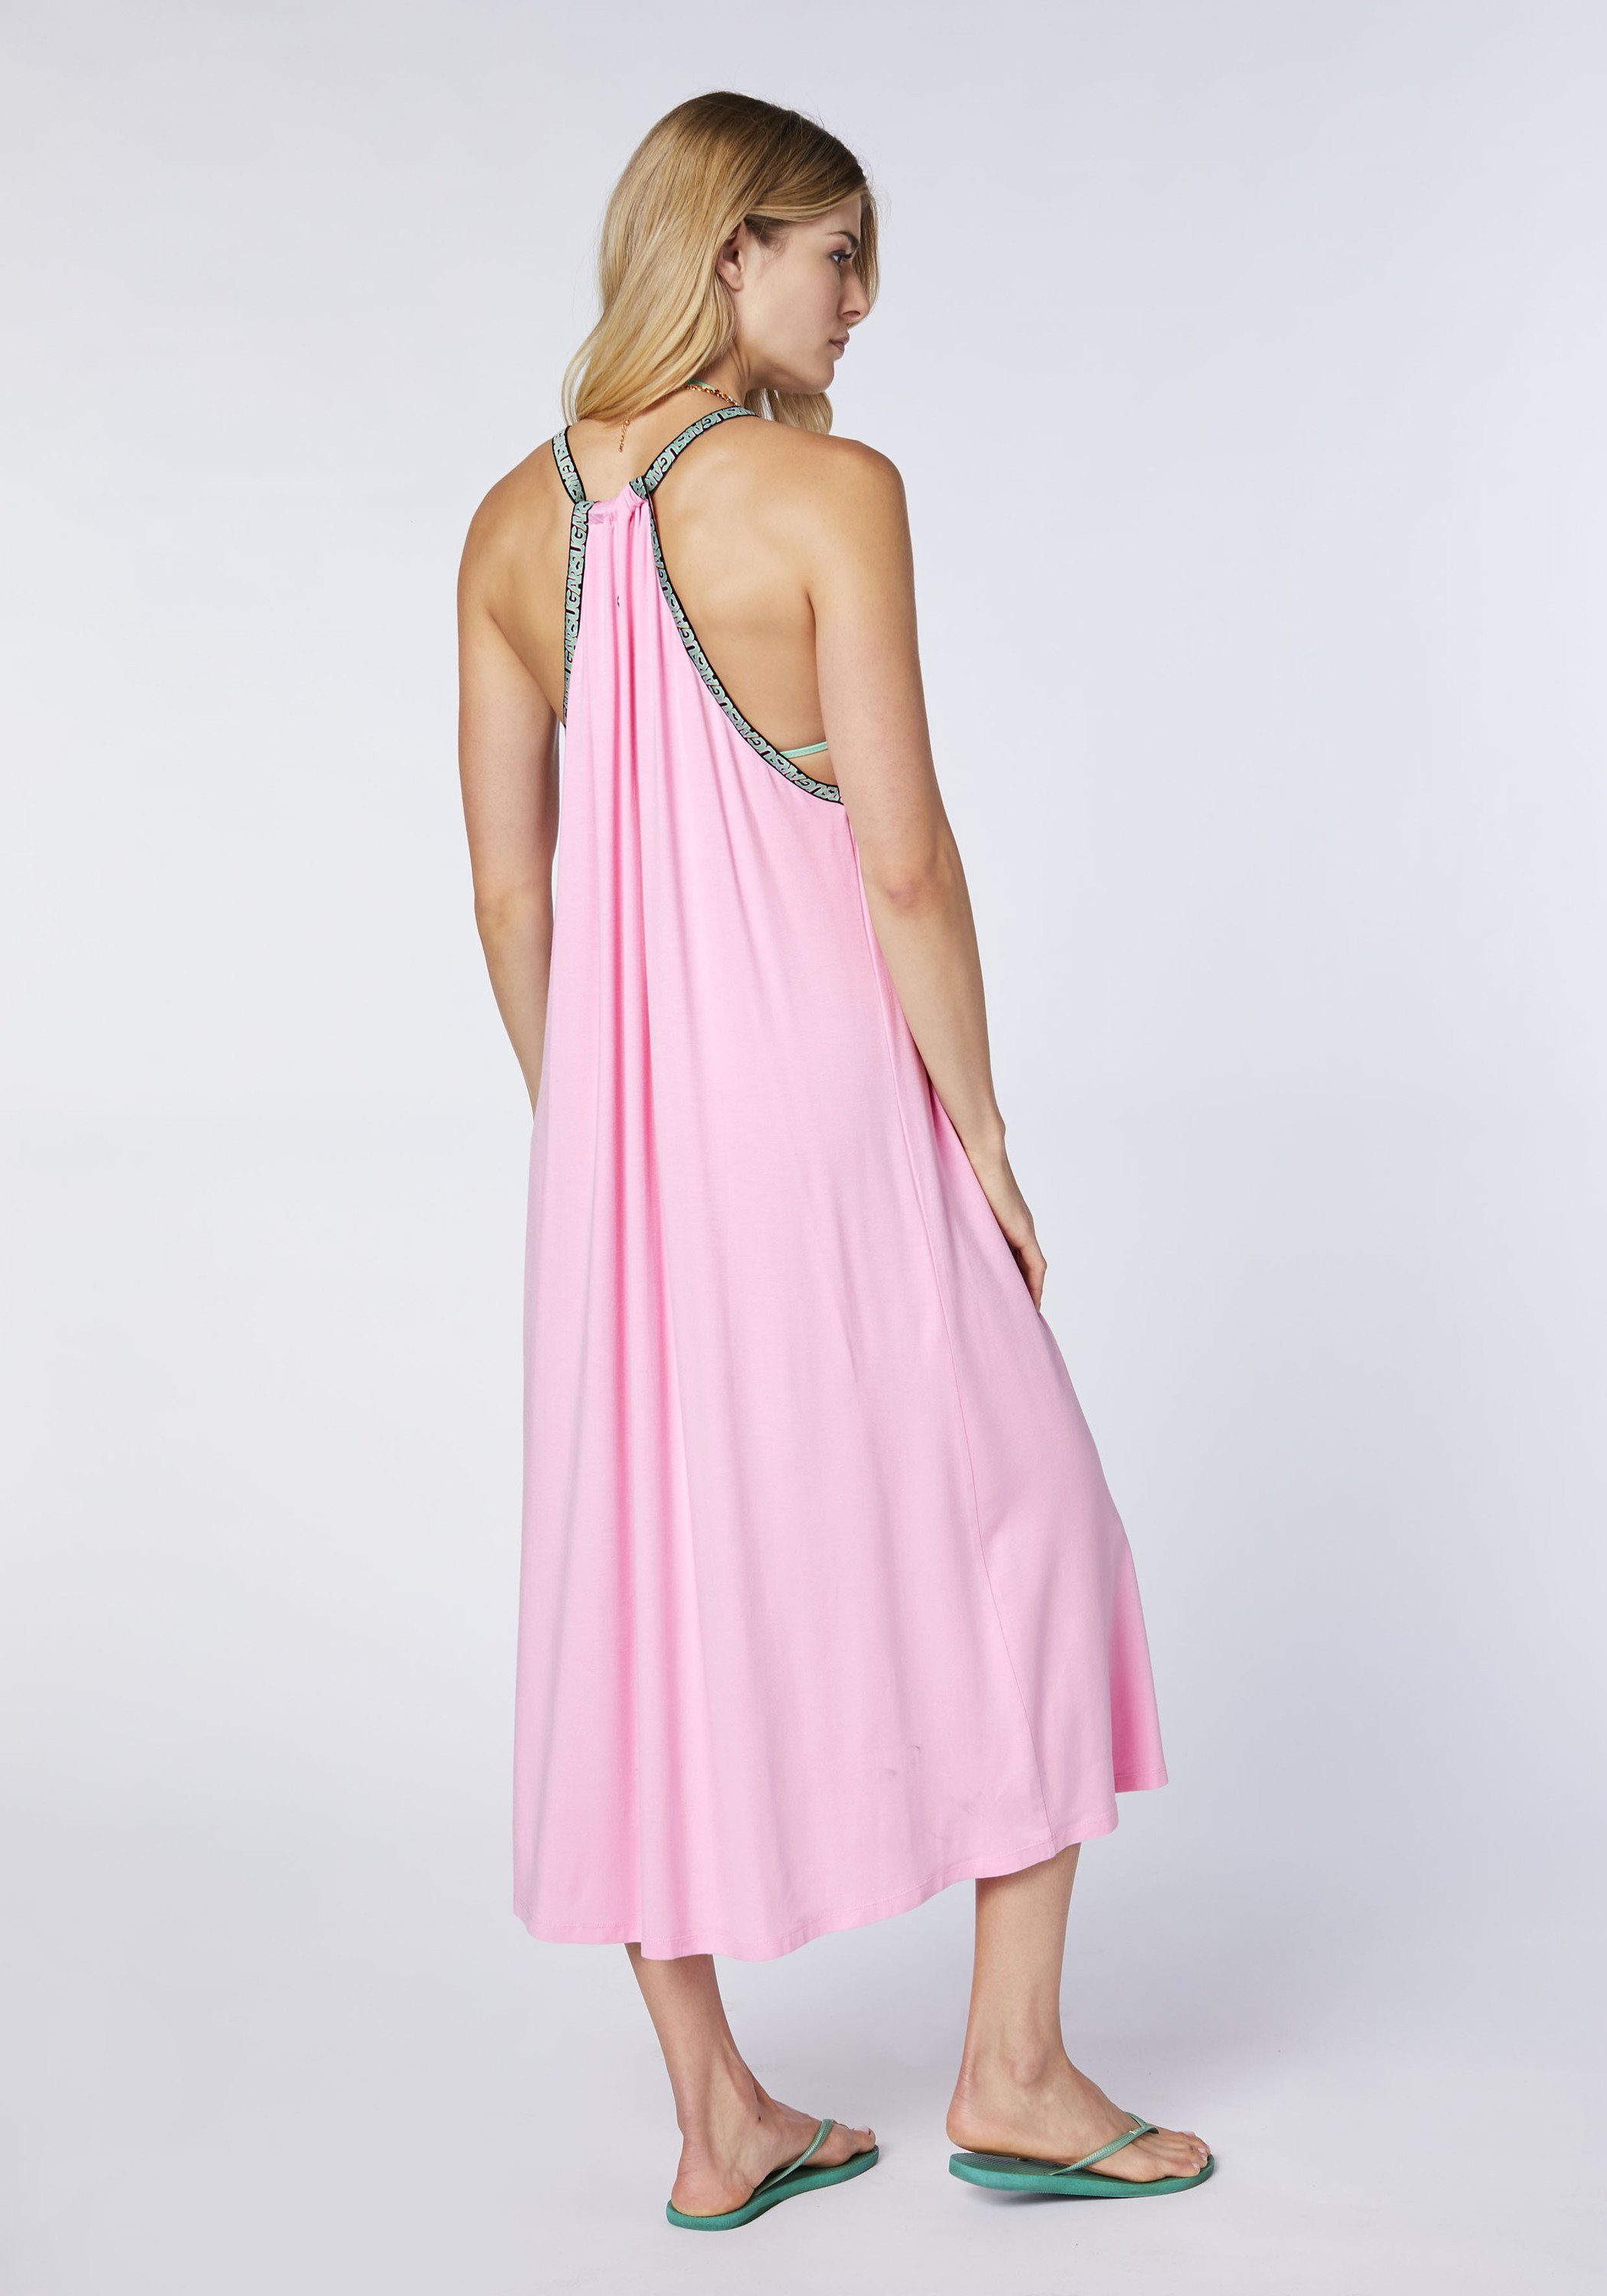 Chiemsee Maxikleid Kleid Prism Langes Pink